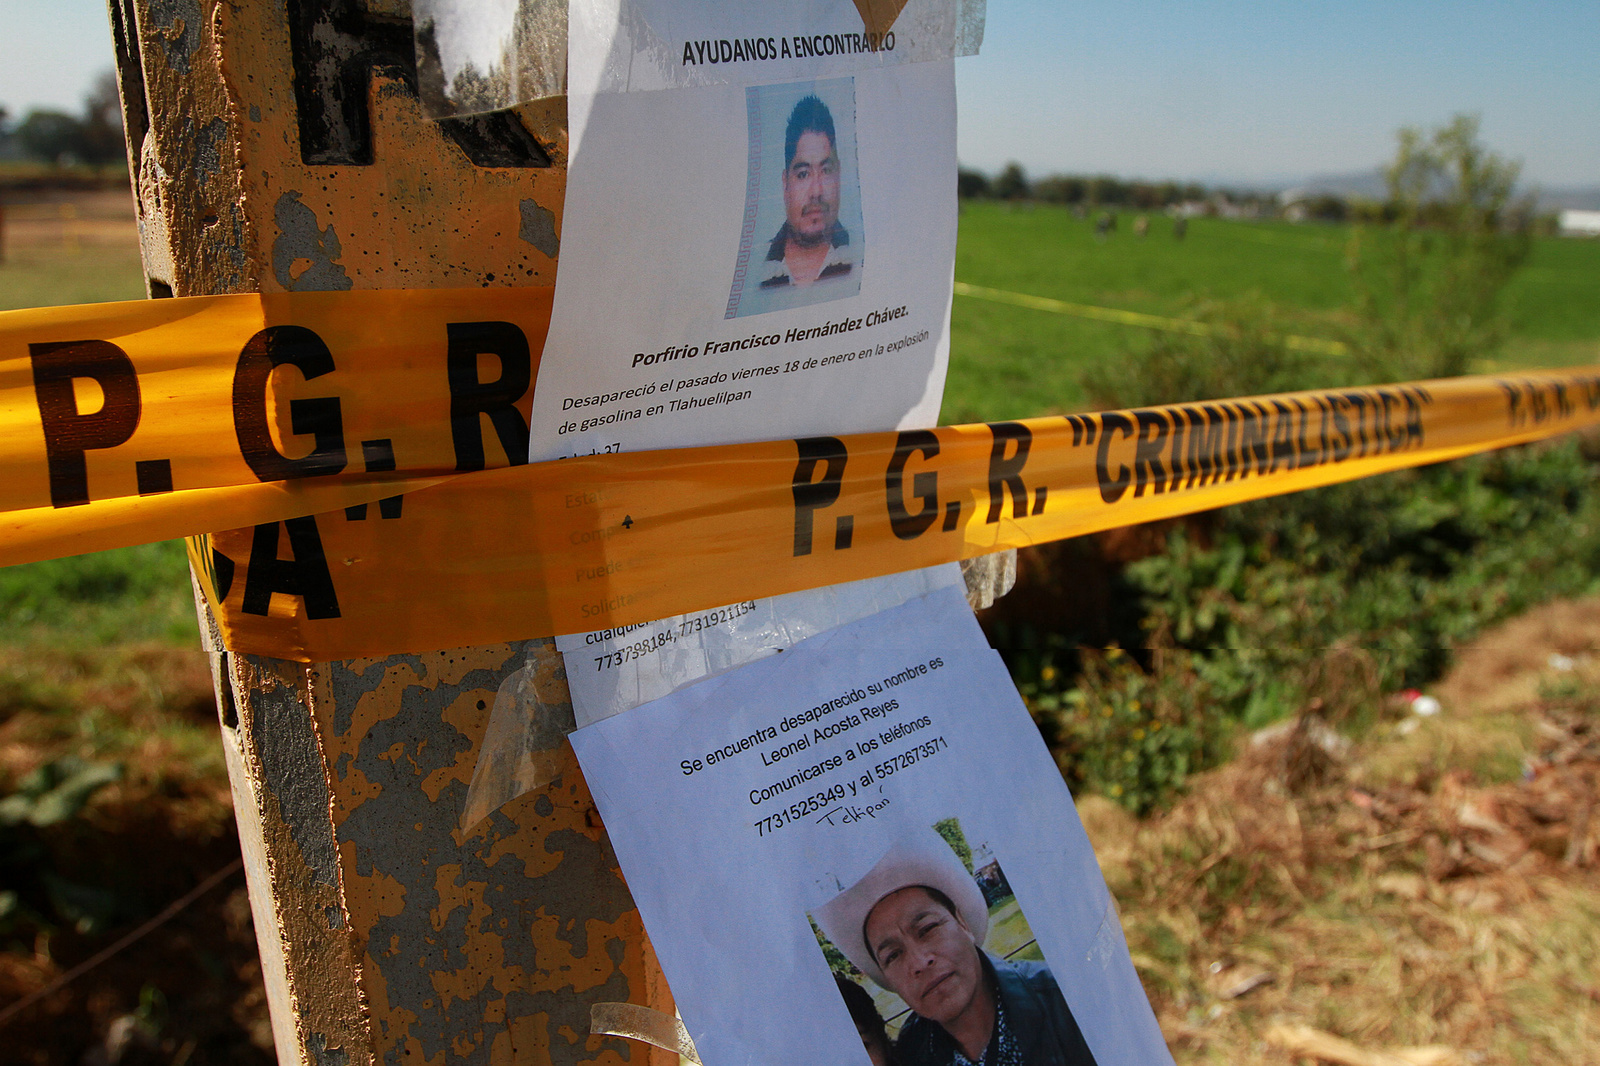 Pesquisa. En postes que señalan el paso de ductos de Pemex familiares han colocado fotografías con la descripción de las víctimas de la explosión. (AGENCIAS)